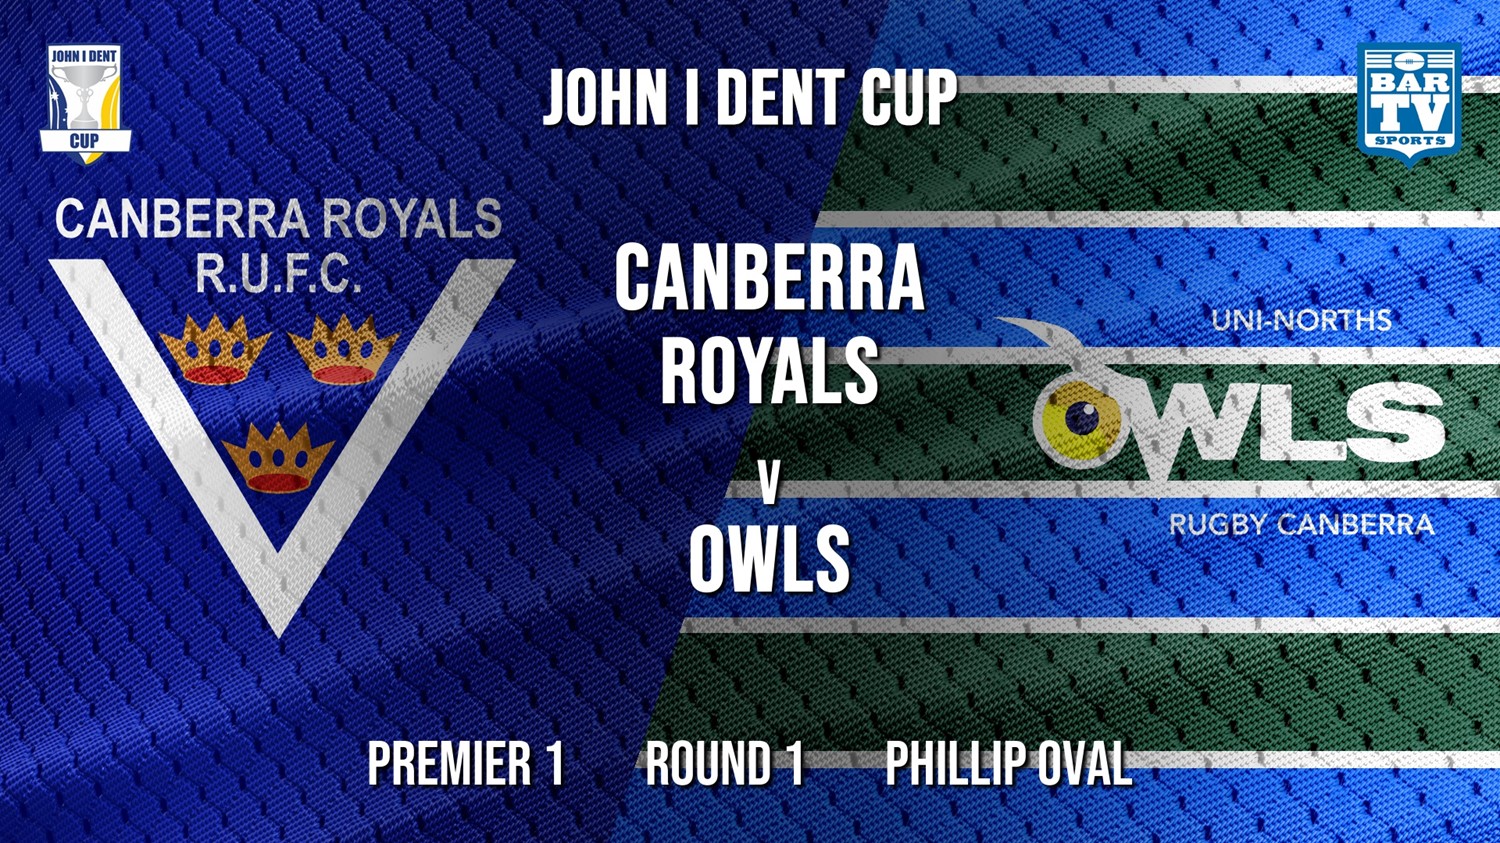 John I Dent Round 1 - Premier 1 - Canberra Royals v UNI-Norths Minigame Slate Image